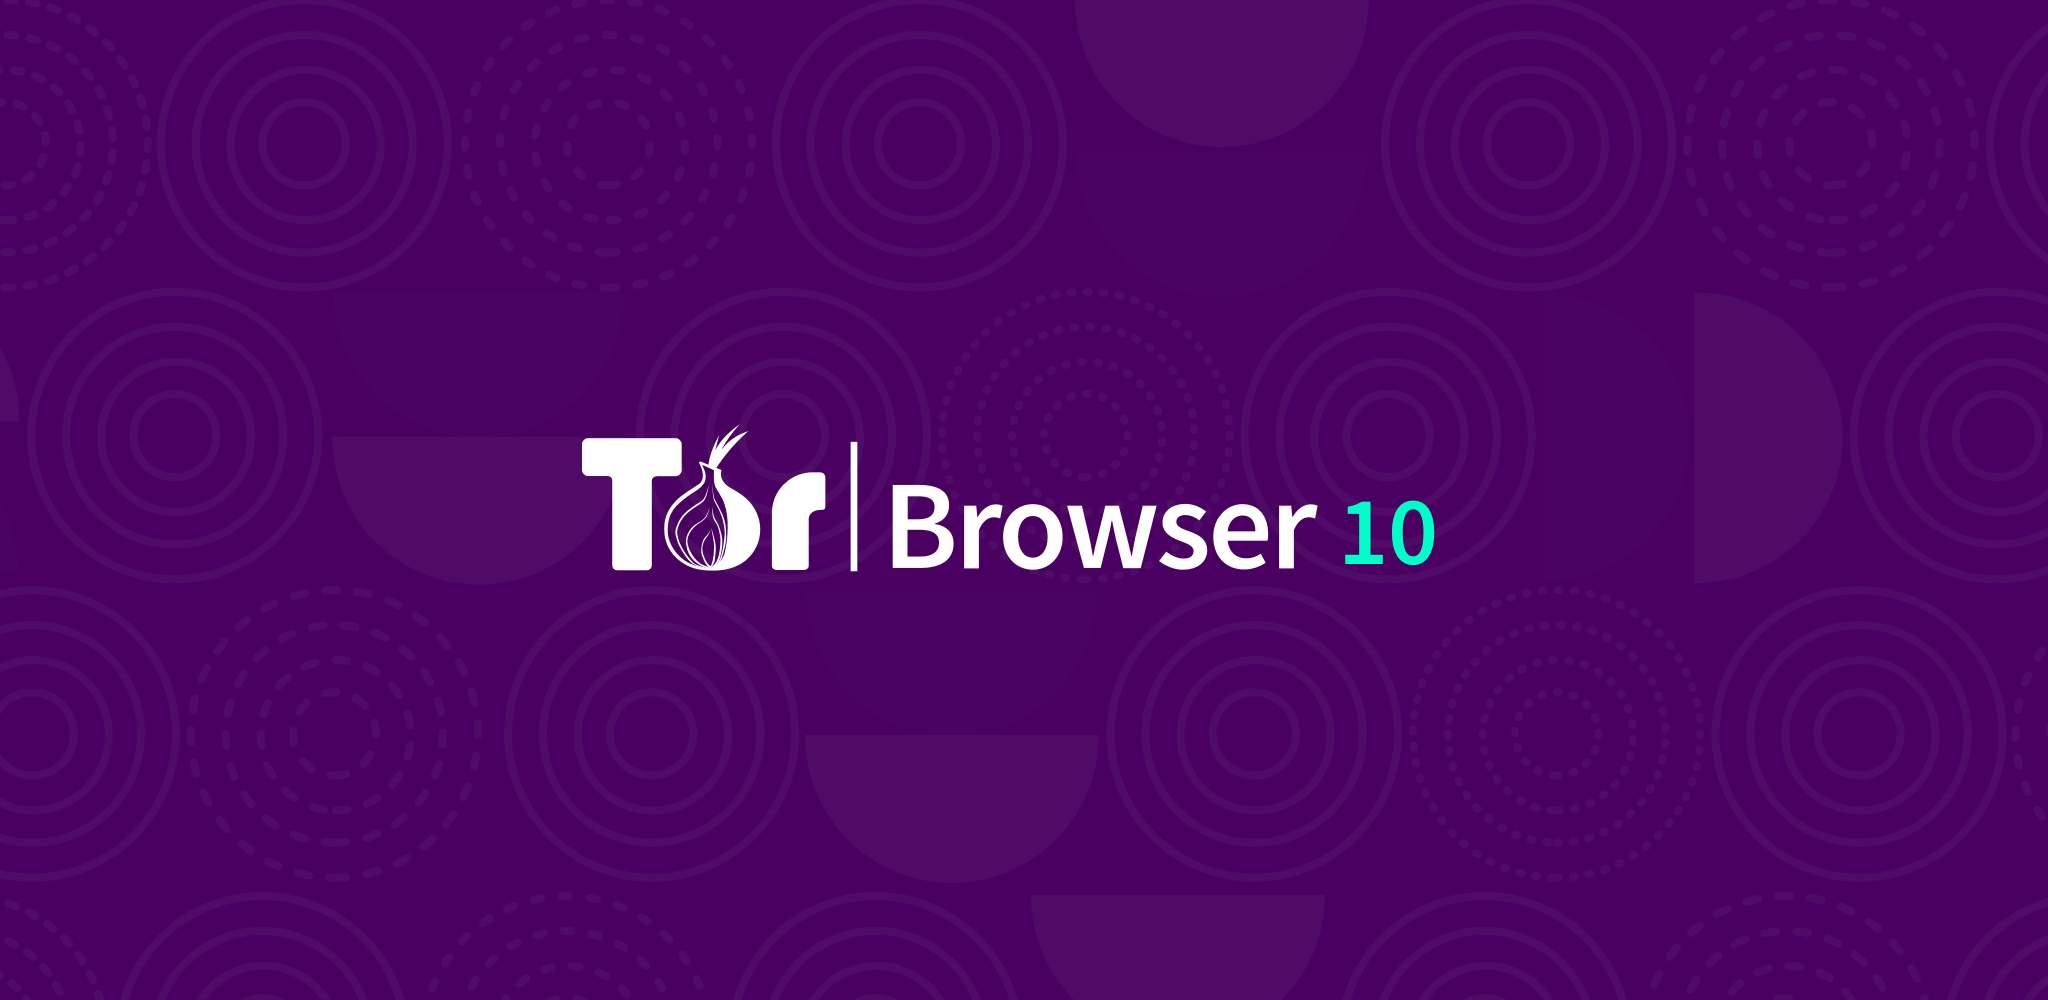 Тор 15 браузеров гидра скачать tornado browser tor на компьютер hyrda